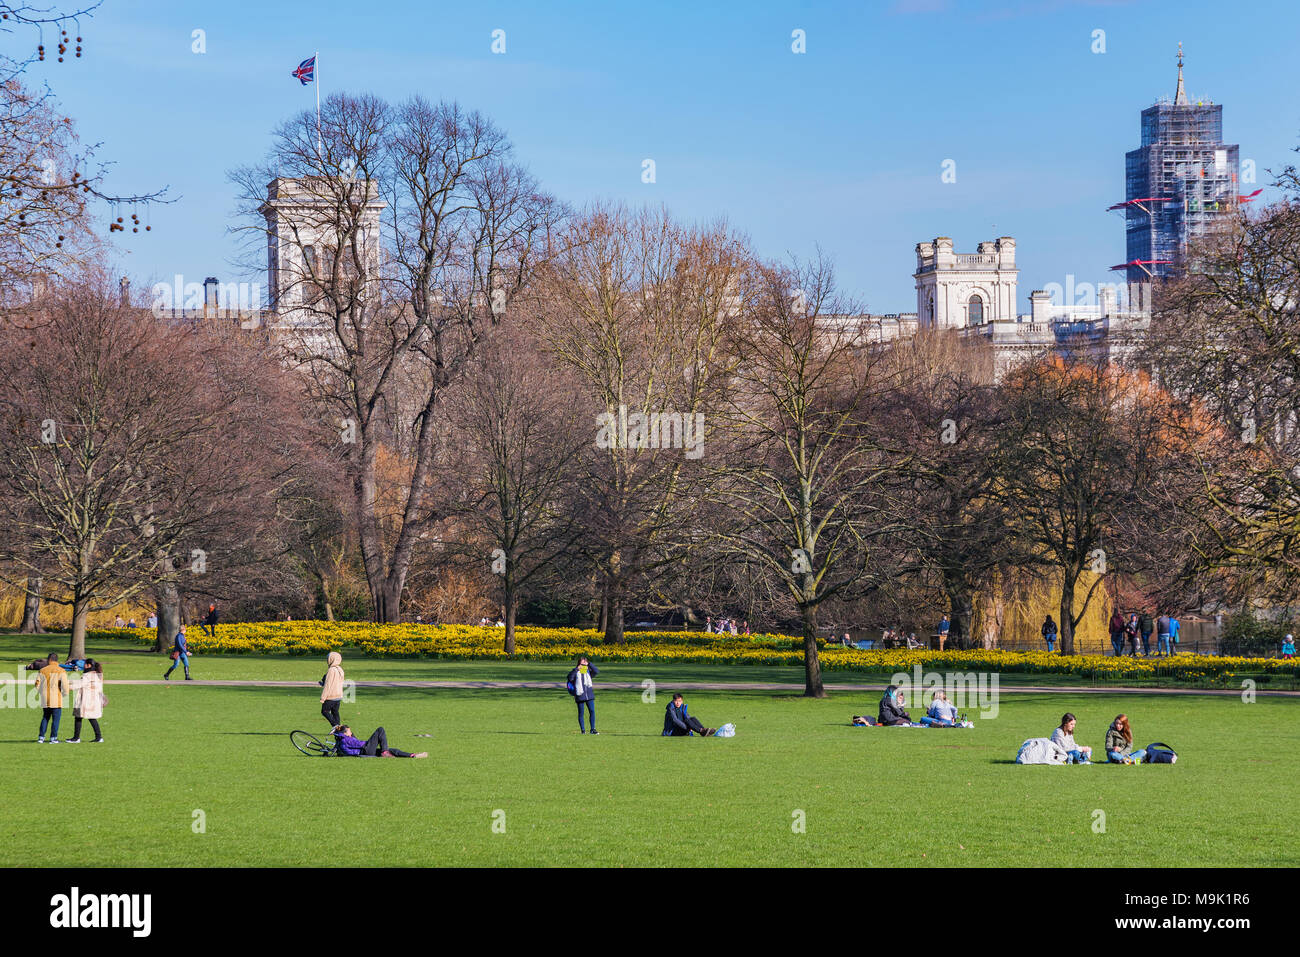 LONDON, GROSSBRITANNIEN, 21. März: Blick auf den St James's Park, ein berühmter Park und Reiseziel am 21. März 2018 in London. Stockfoto